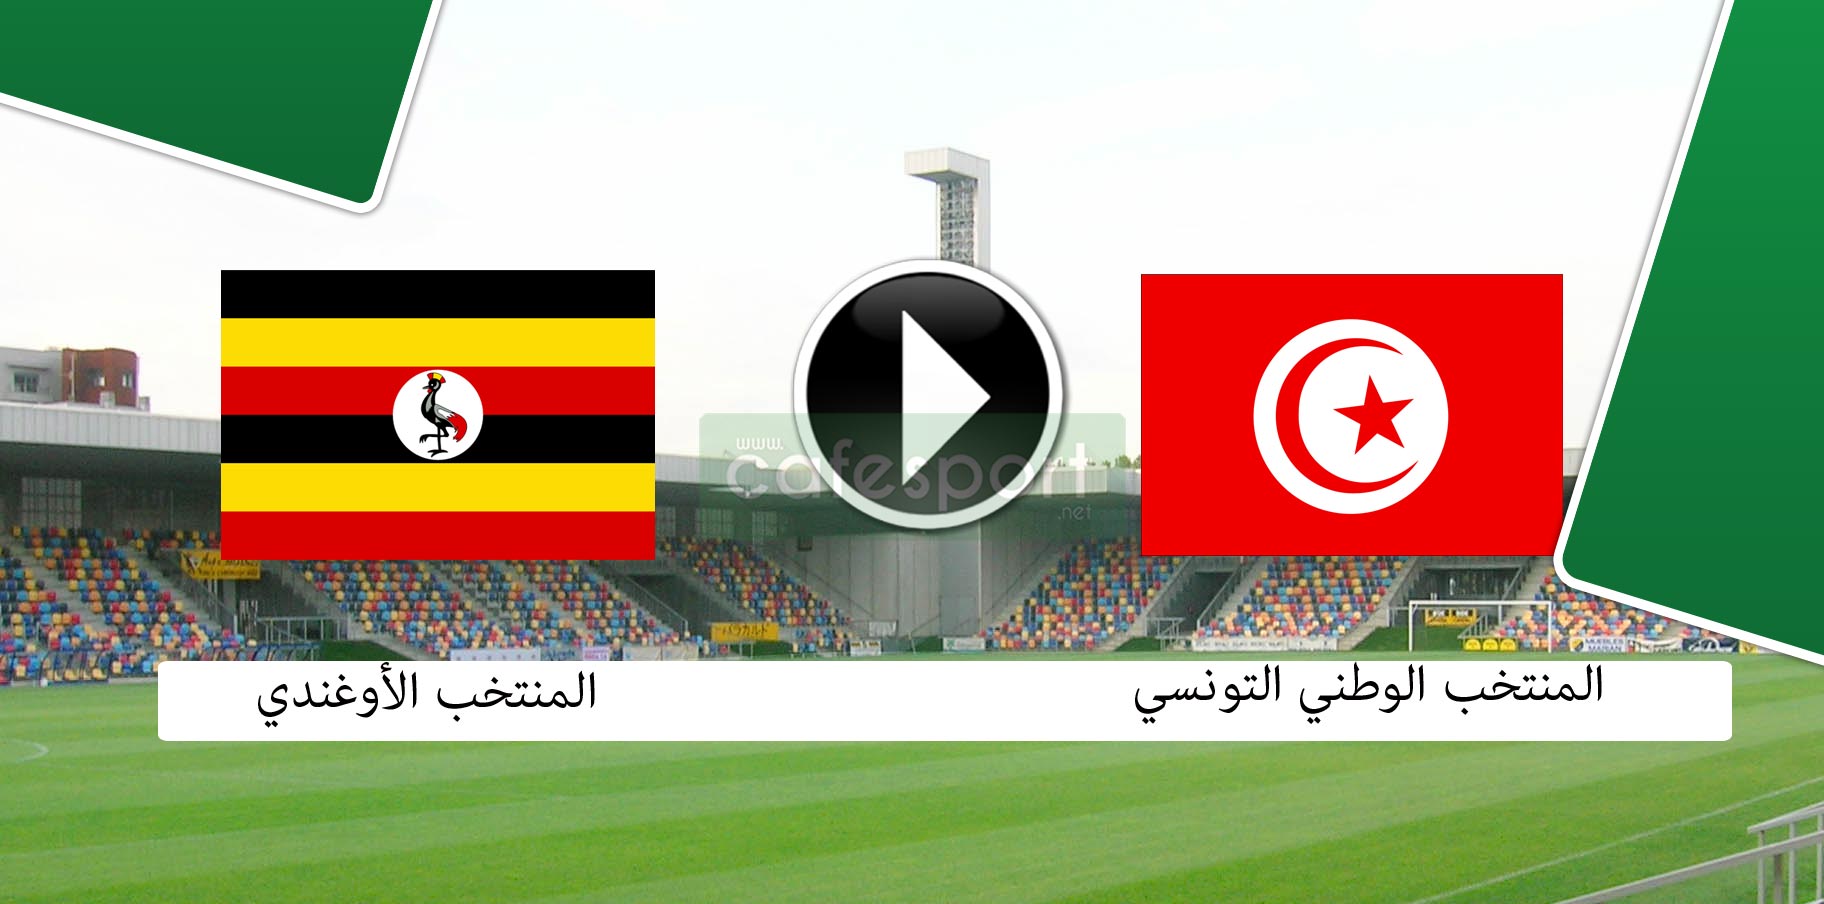 غريب: قناة مصريّة تنقل مقابلة المنتخب التونسي ضد أوغندا